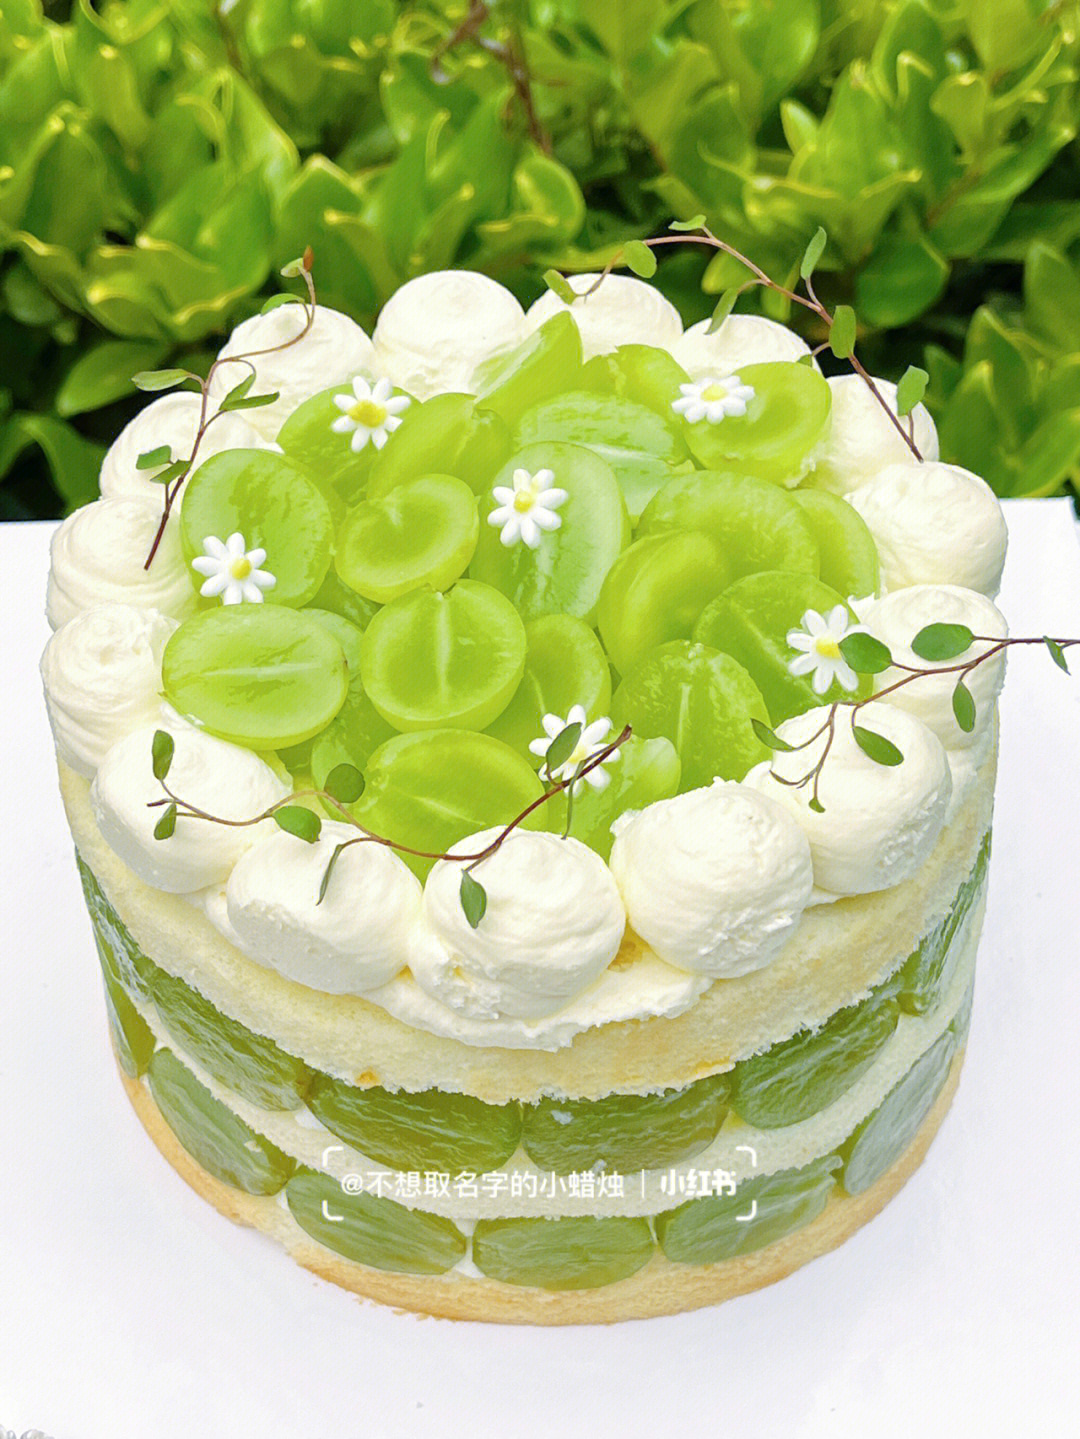 生日的bb们买蛋糕可以试试这款青提蛋糕呀满眼都是清新的绿色9191